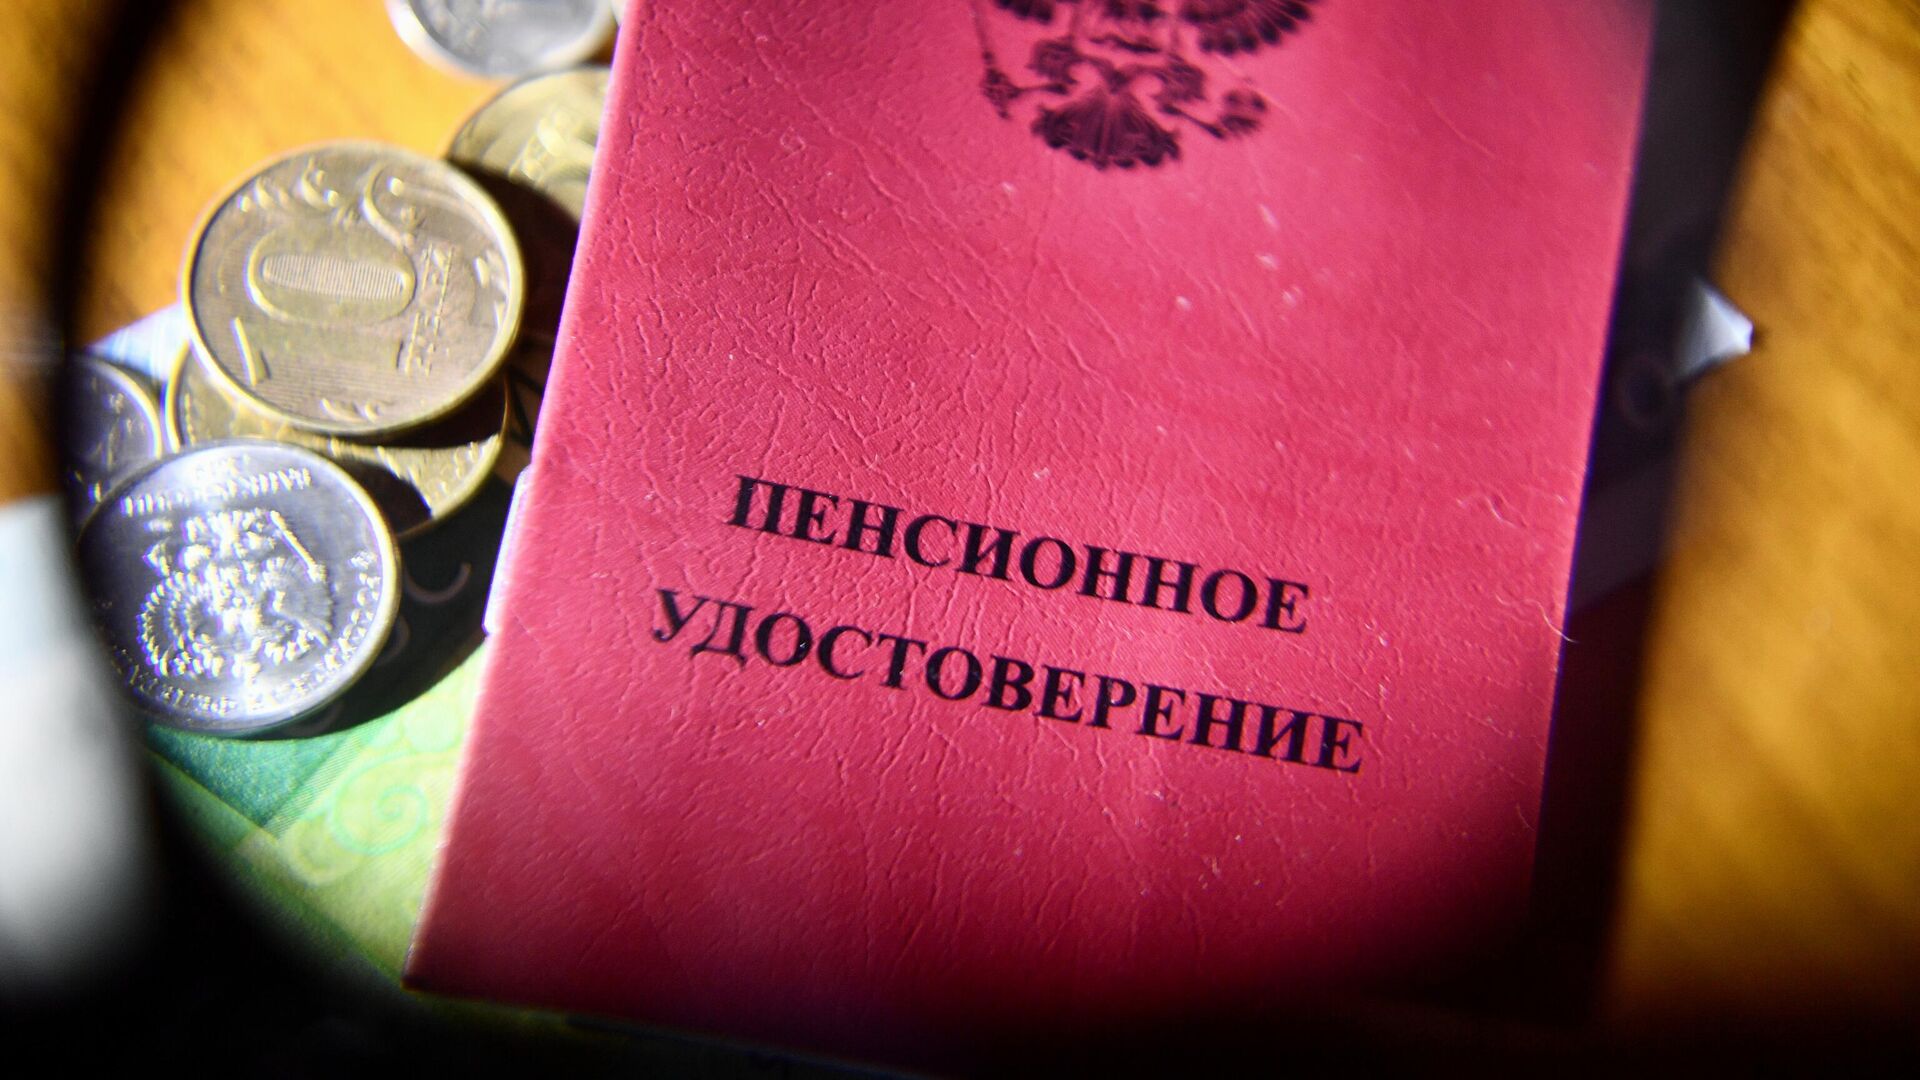 Пенсионное удостоверение - РИА Новости, 1920, 12.12.2021